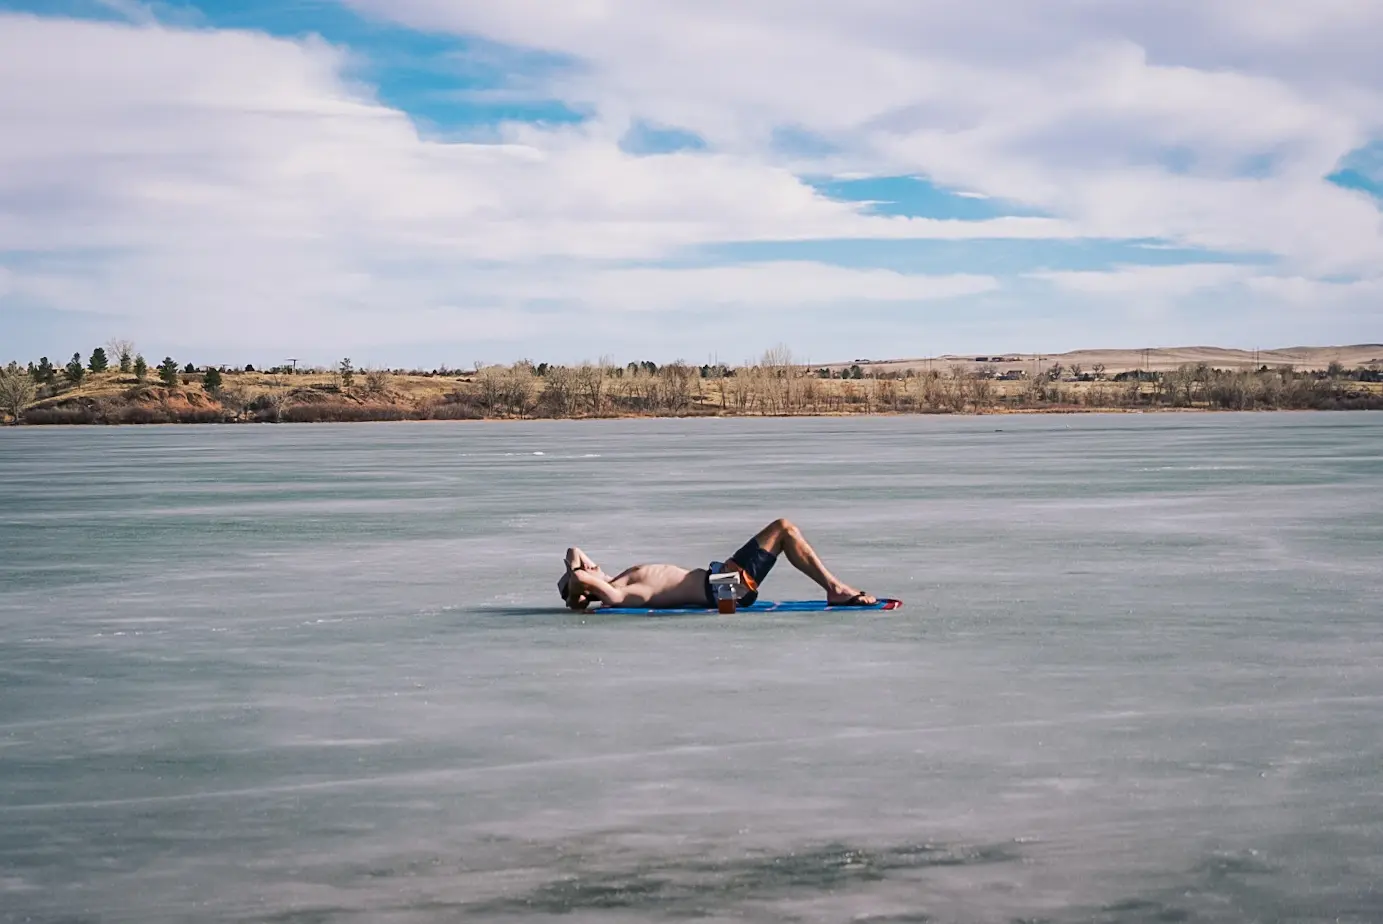 Sunbathing on a frozen lake, 2021